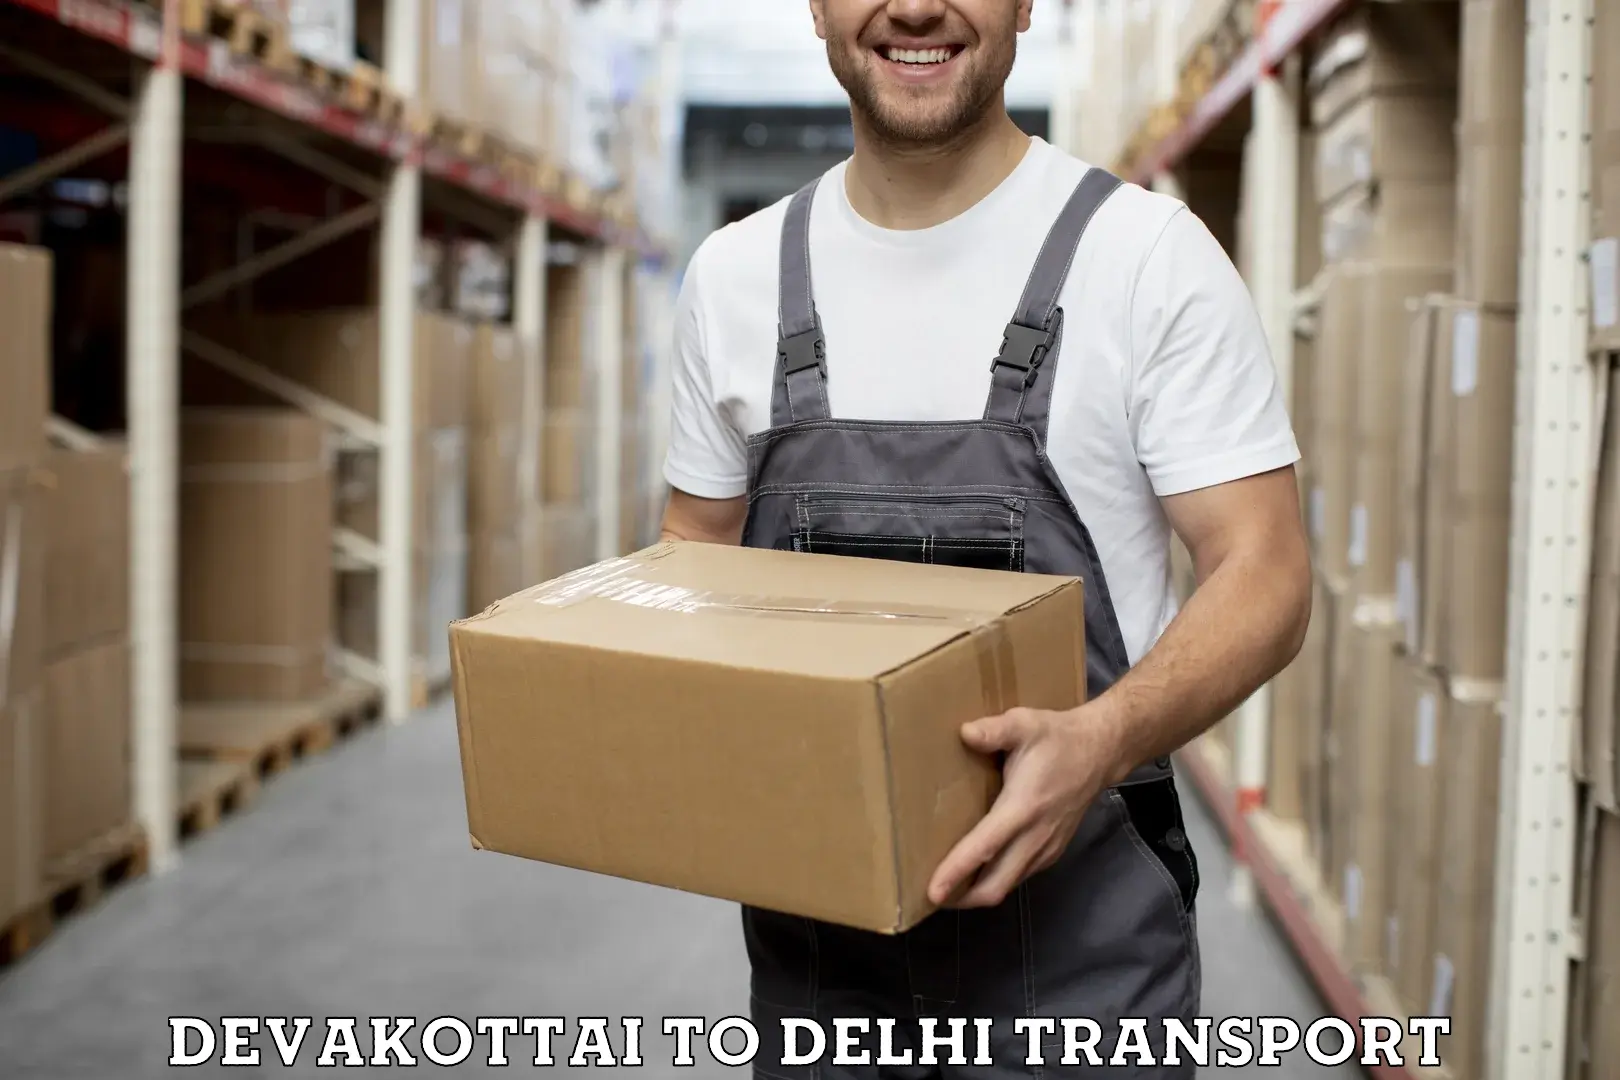 Container transport service Devakottai to Ramesh Nagar